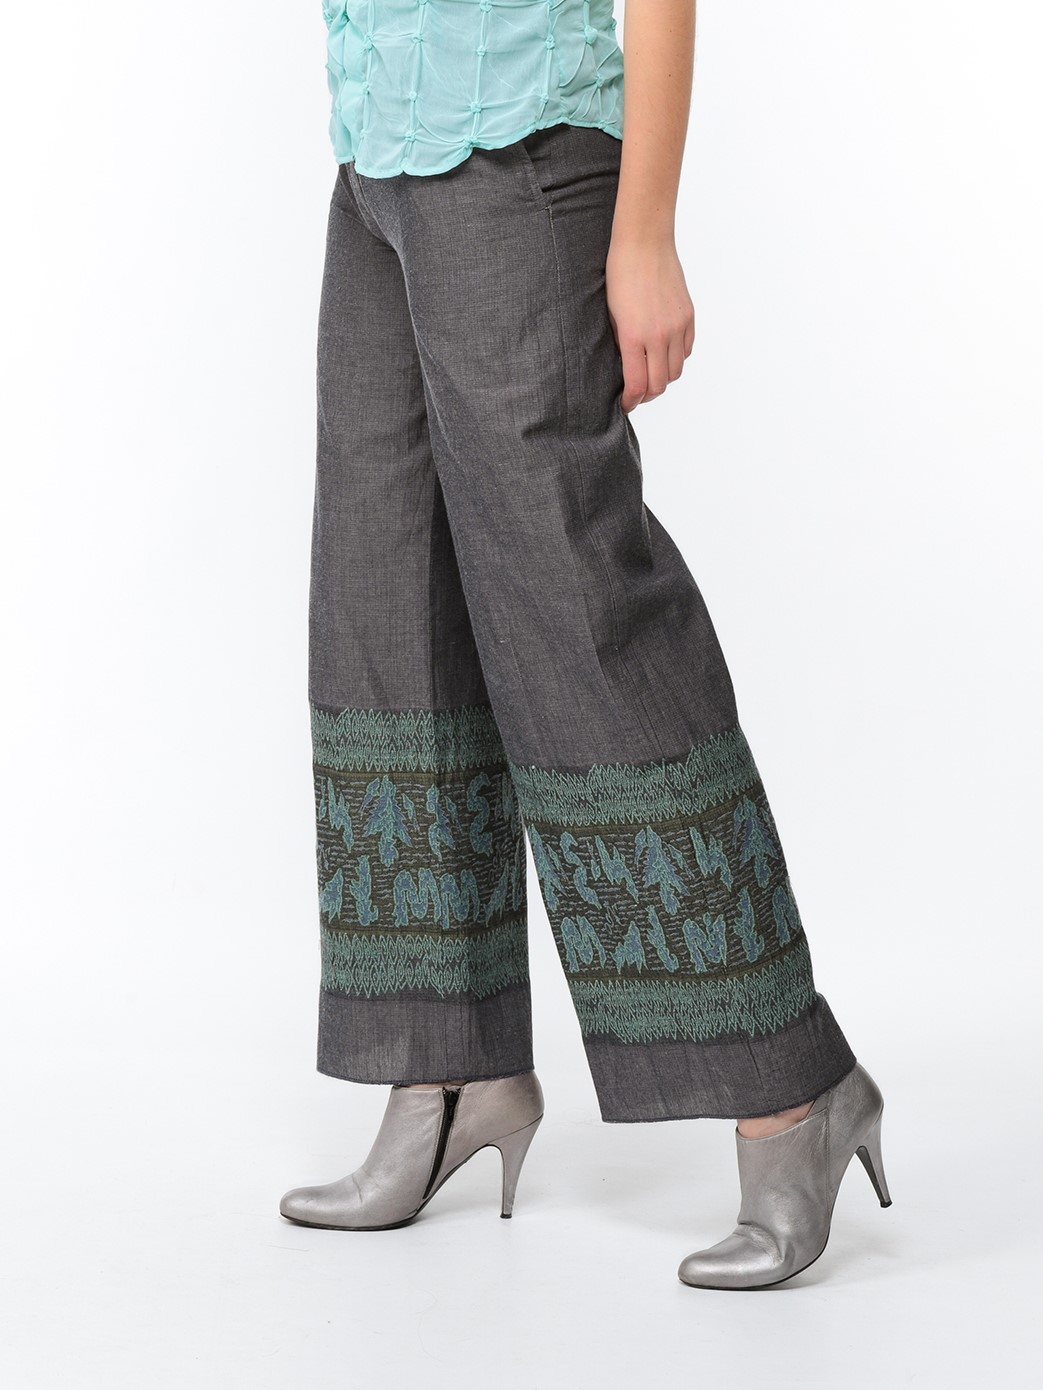 Pantalon large en toile gris acier avec bas brodé turquoise et kaki